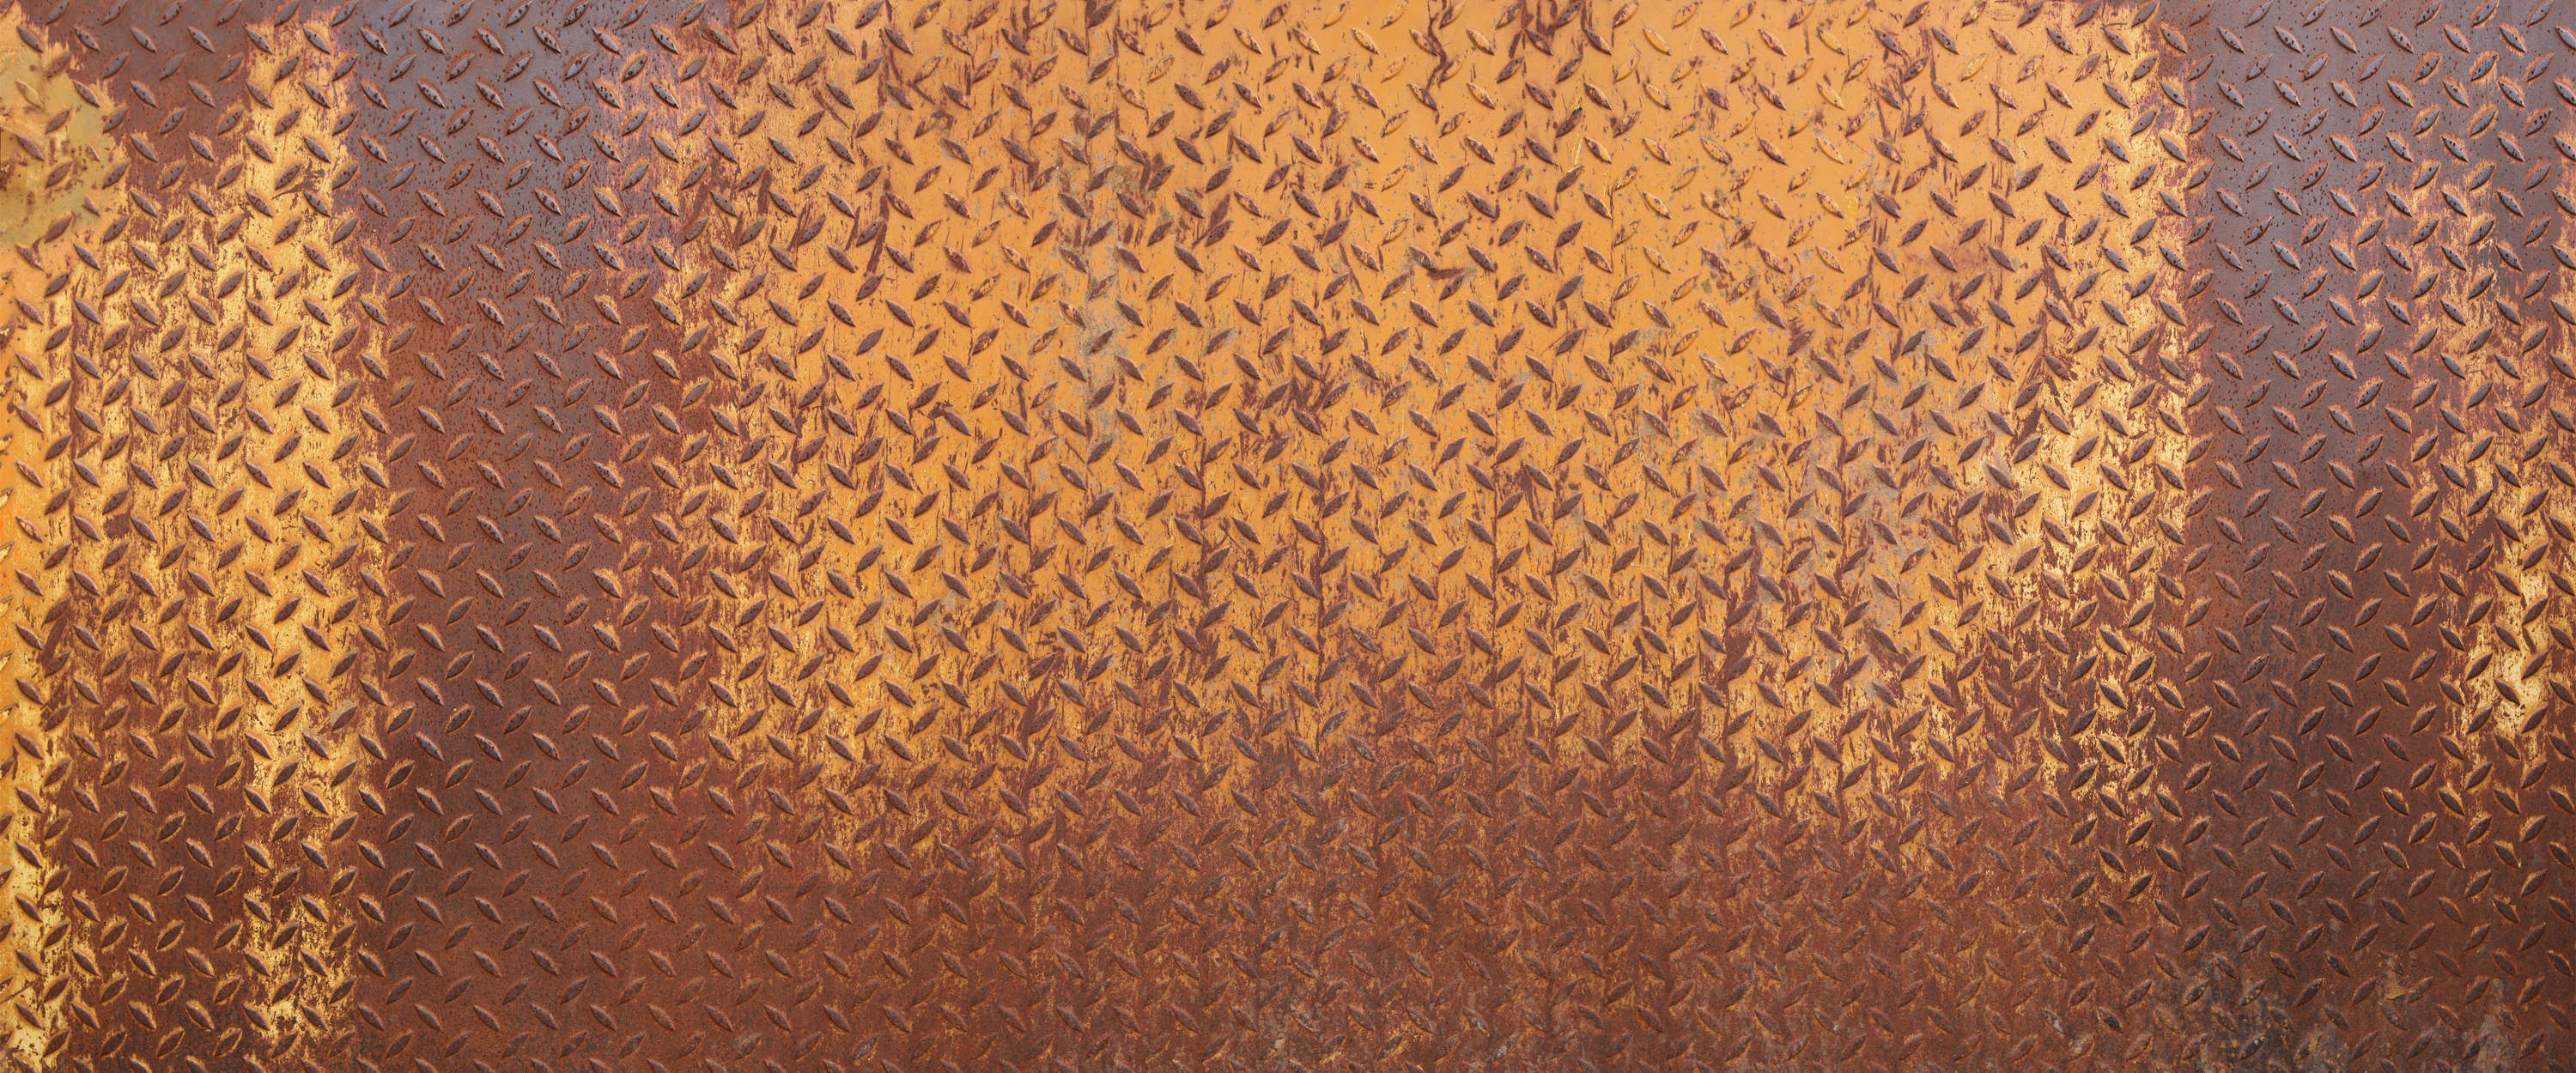             Metal mural steel plate rust with diamond pattern
        